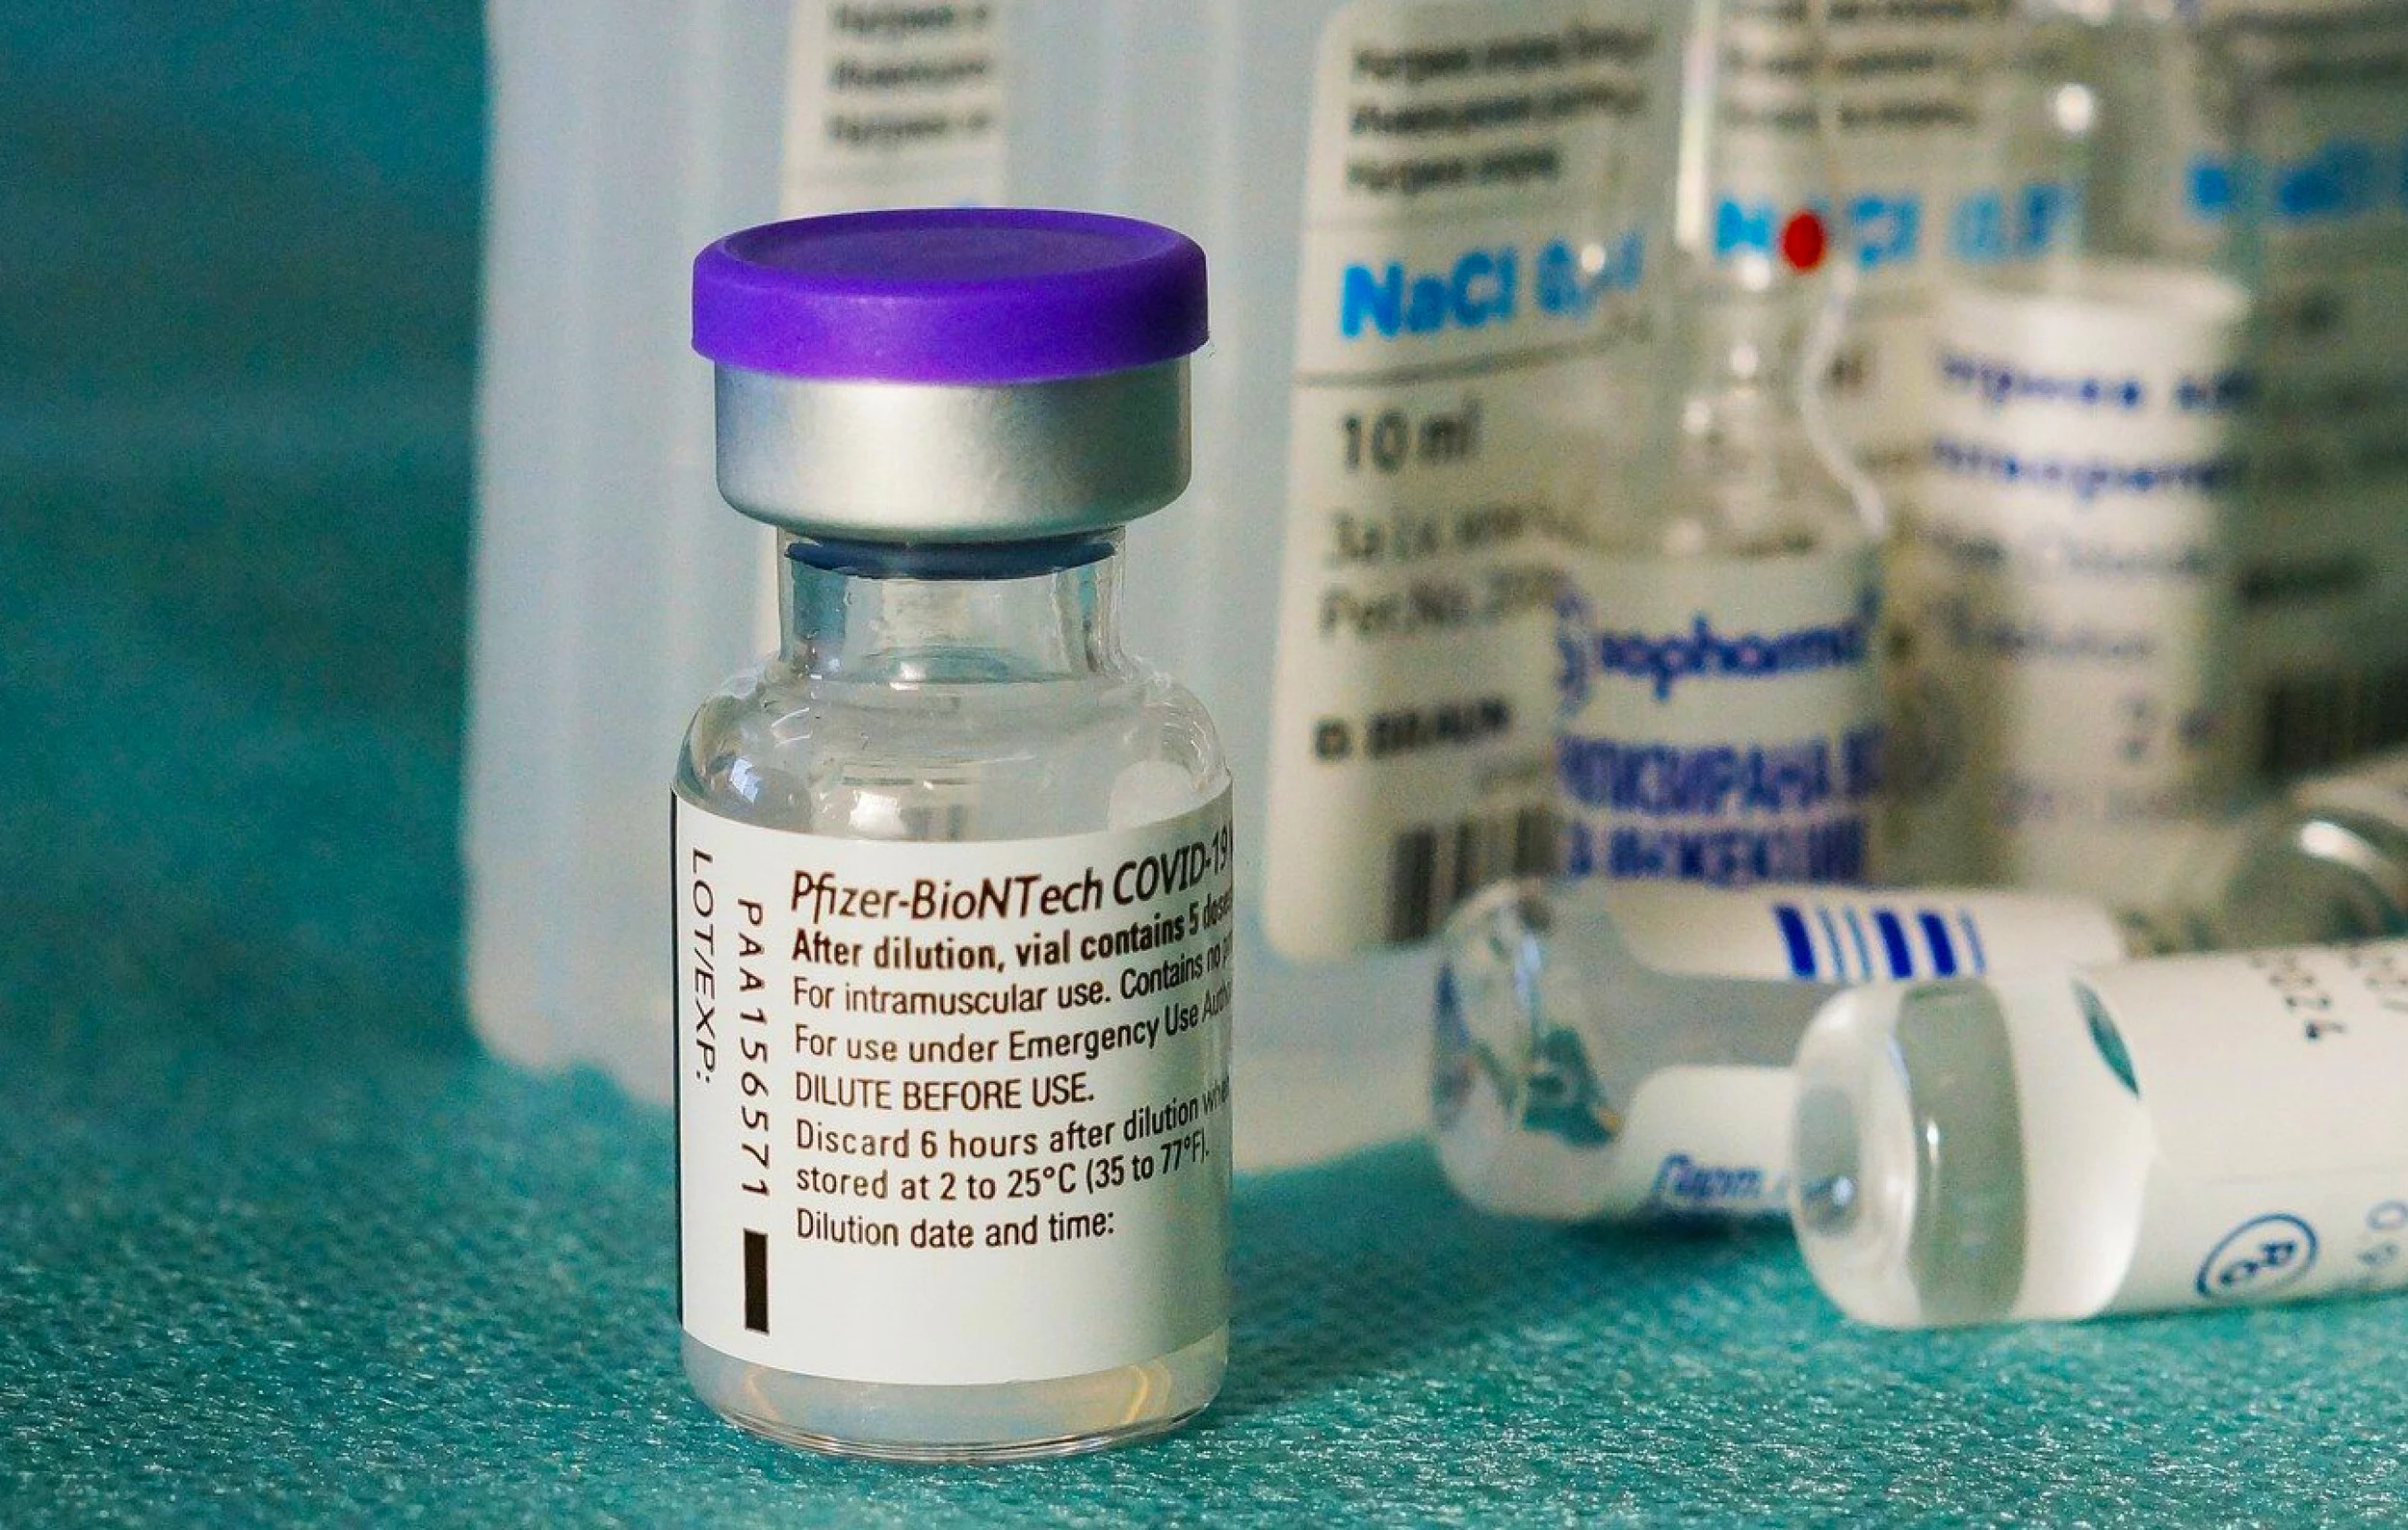 ΗΠΑ: Σοκάρουν οι παρενέργειες που έπαθε μια νοσοκόμα μετά τον εμβολιασμό της με Pfizer-BioNTech